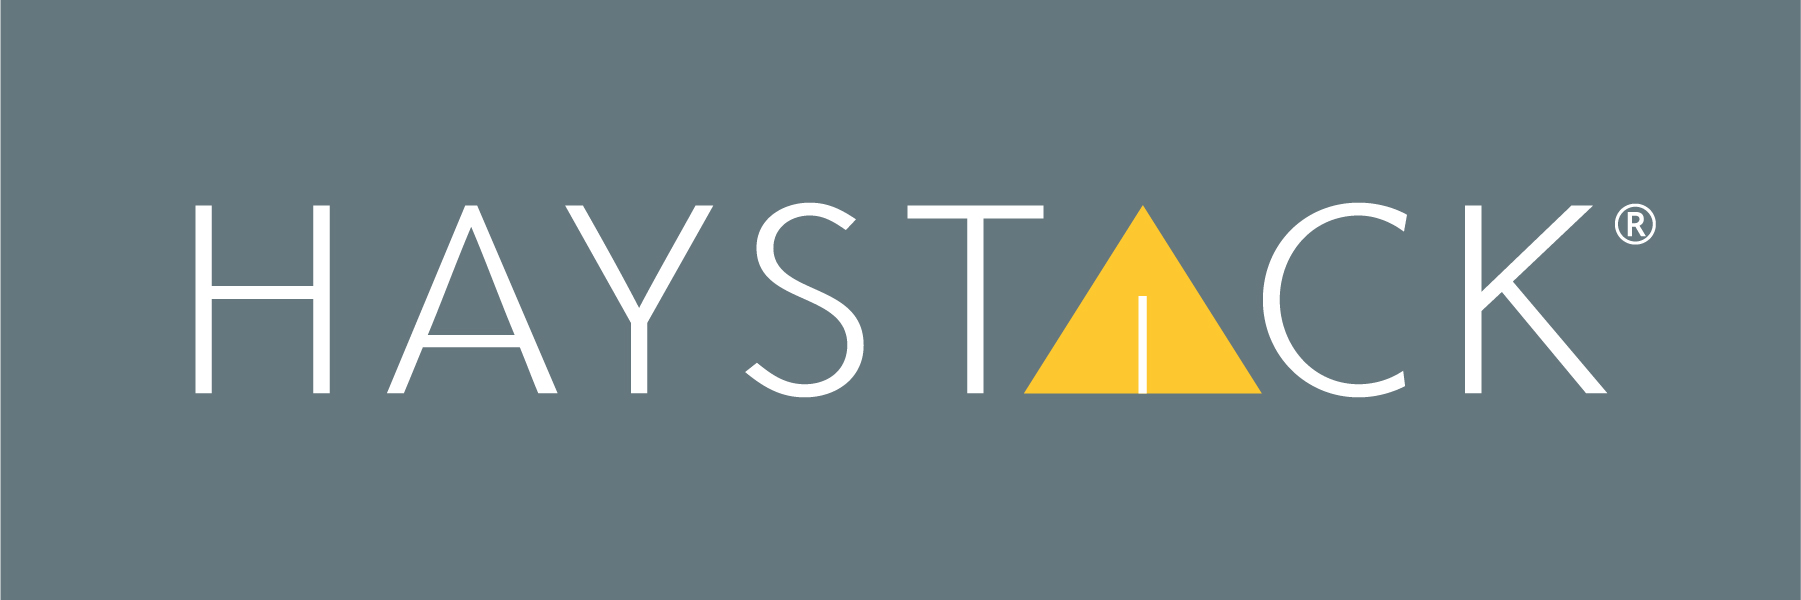 haystackid logo